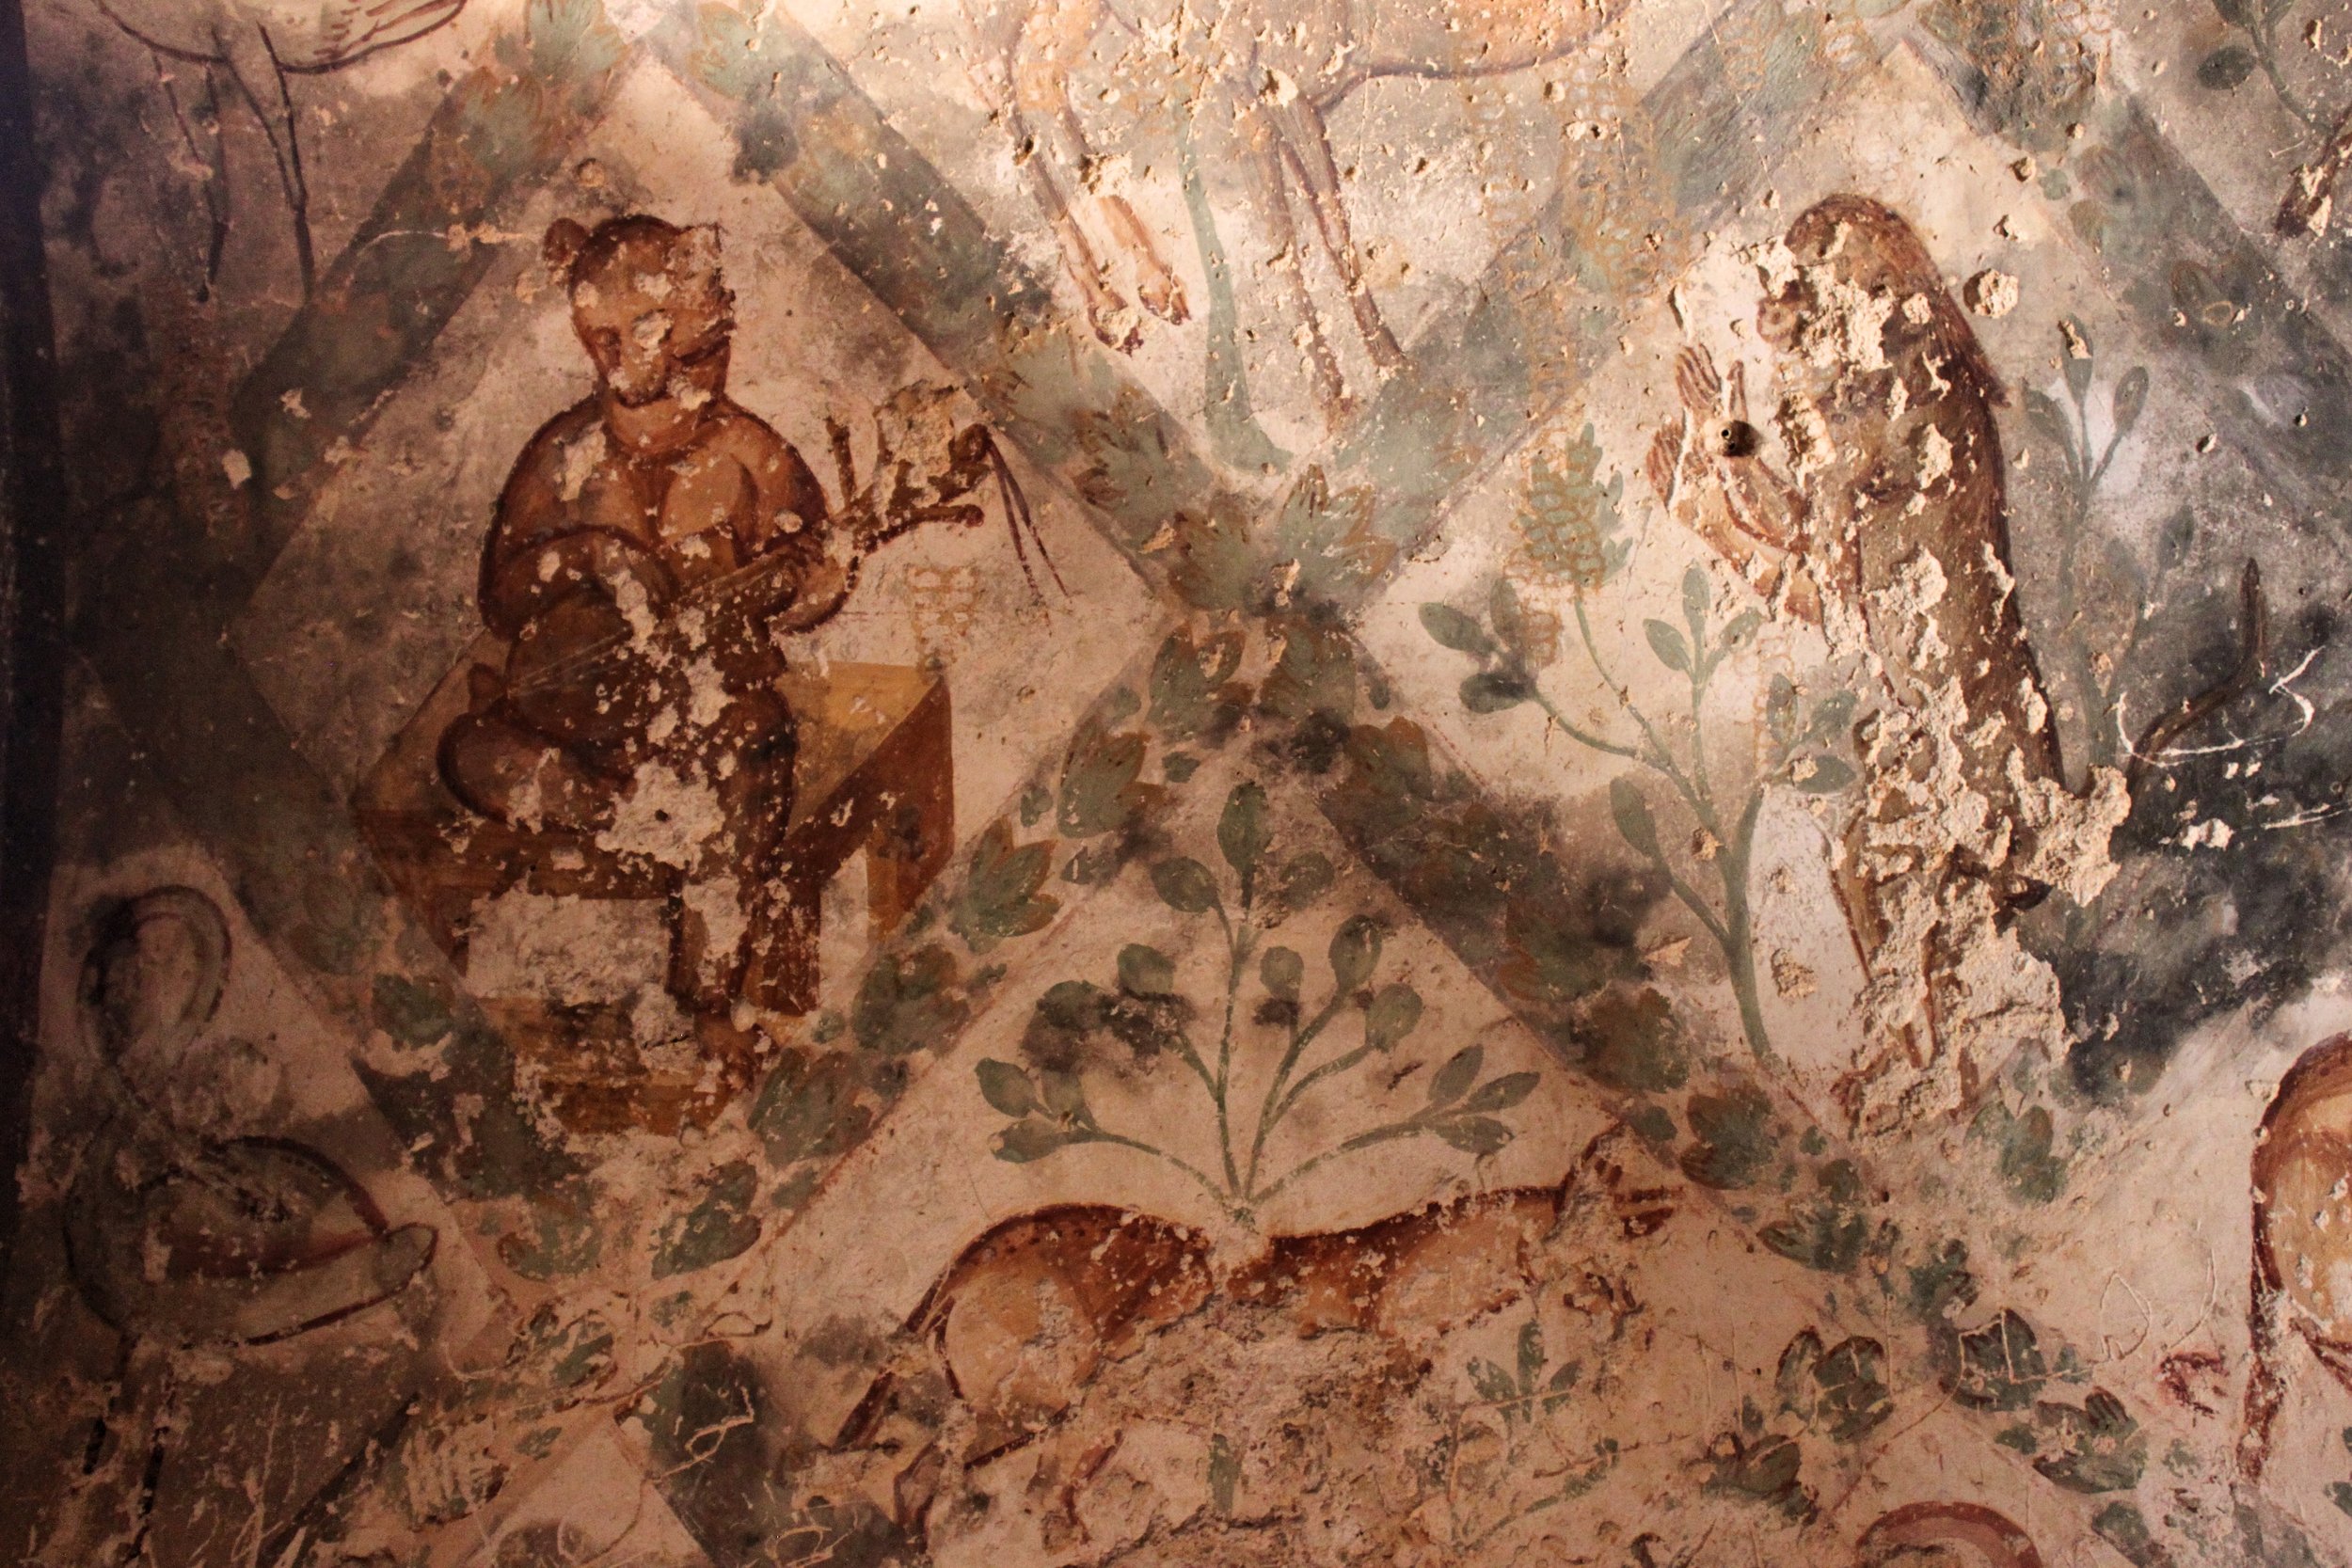 Qusayr 'Amra or Quseir Amra frescoes, "Desert Castle" in eastern Jordan